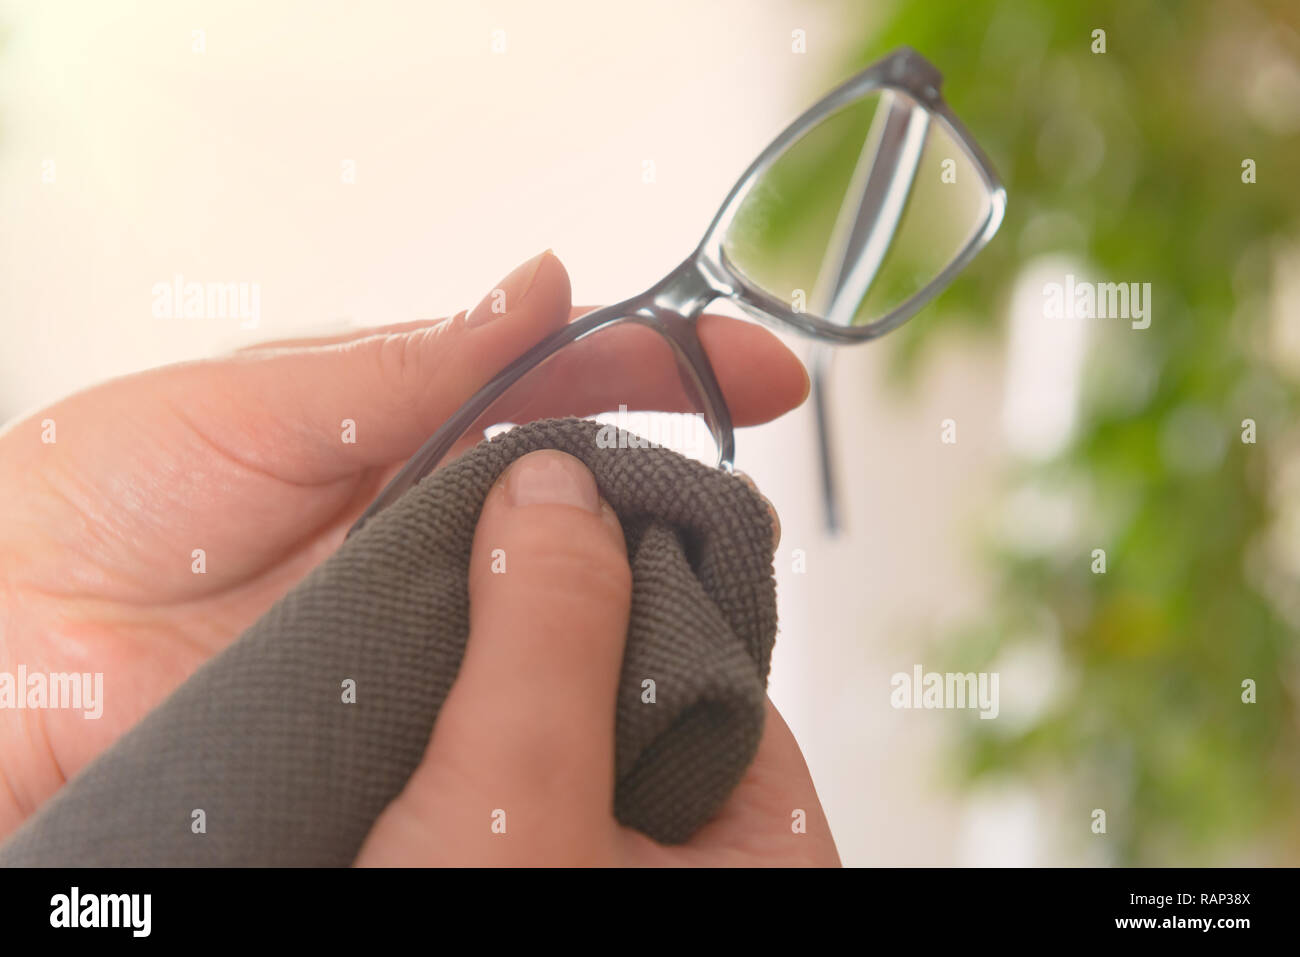 Frau Reinigung Brillen mit Mikrofasertuch Stockfotografie - Alamy